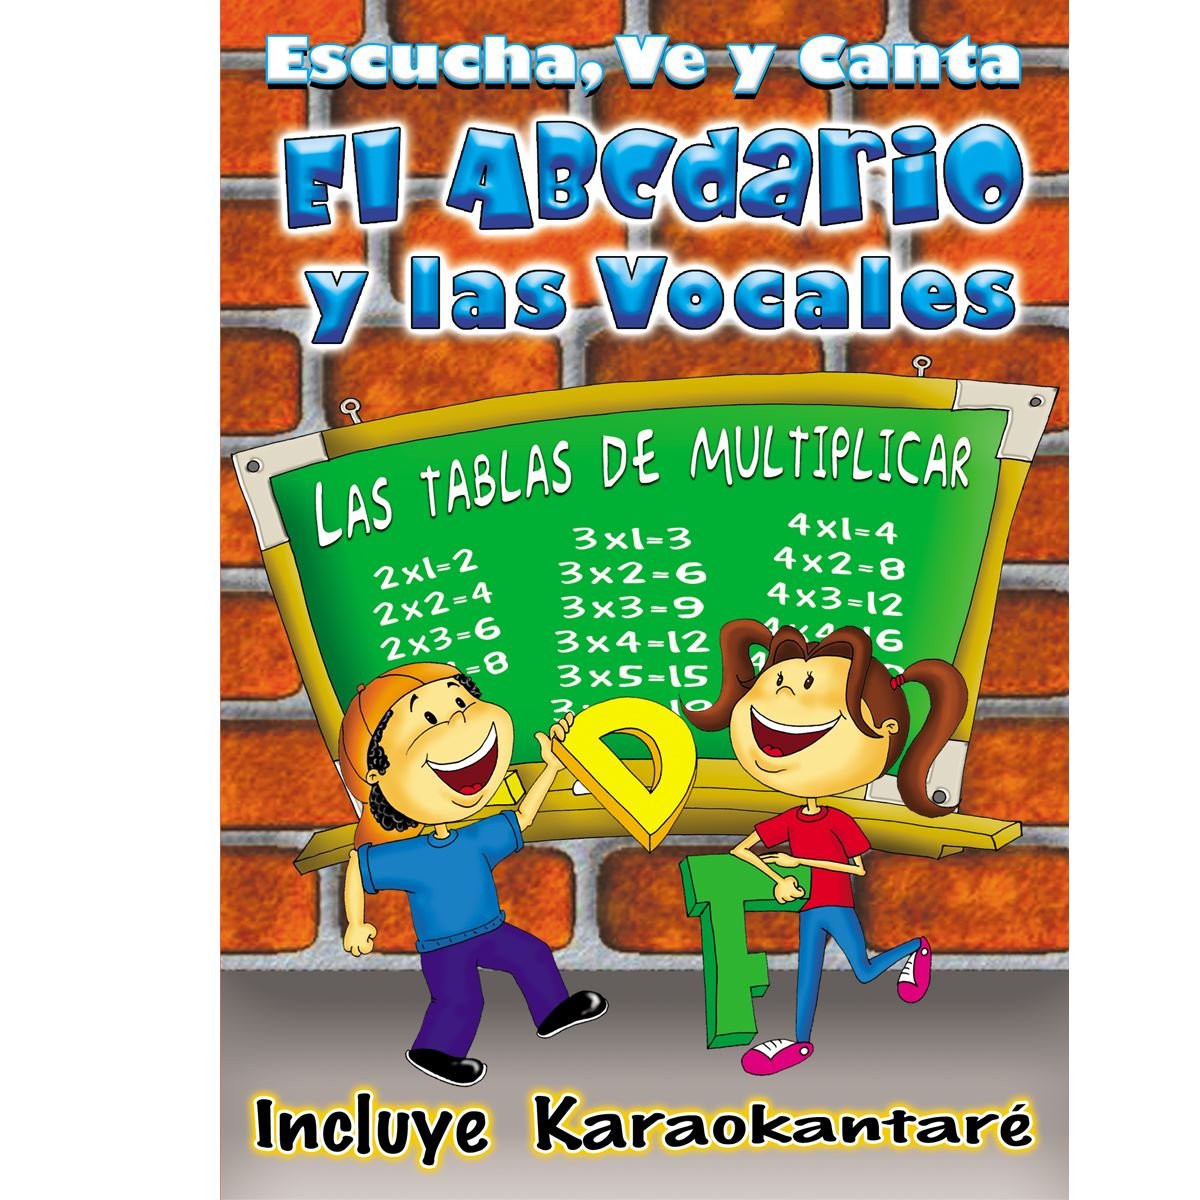 DVD EI Abecedario Las Tablas De Multiplicar  y  Las Vocales